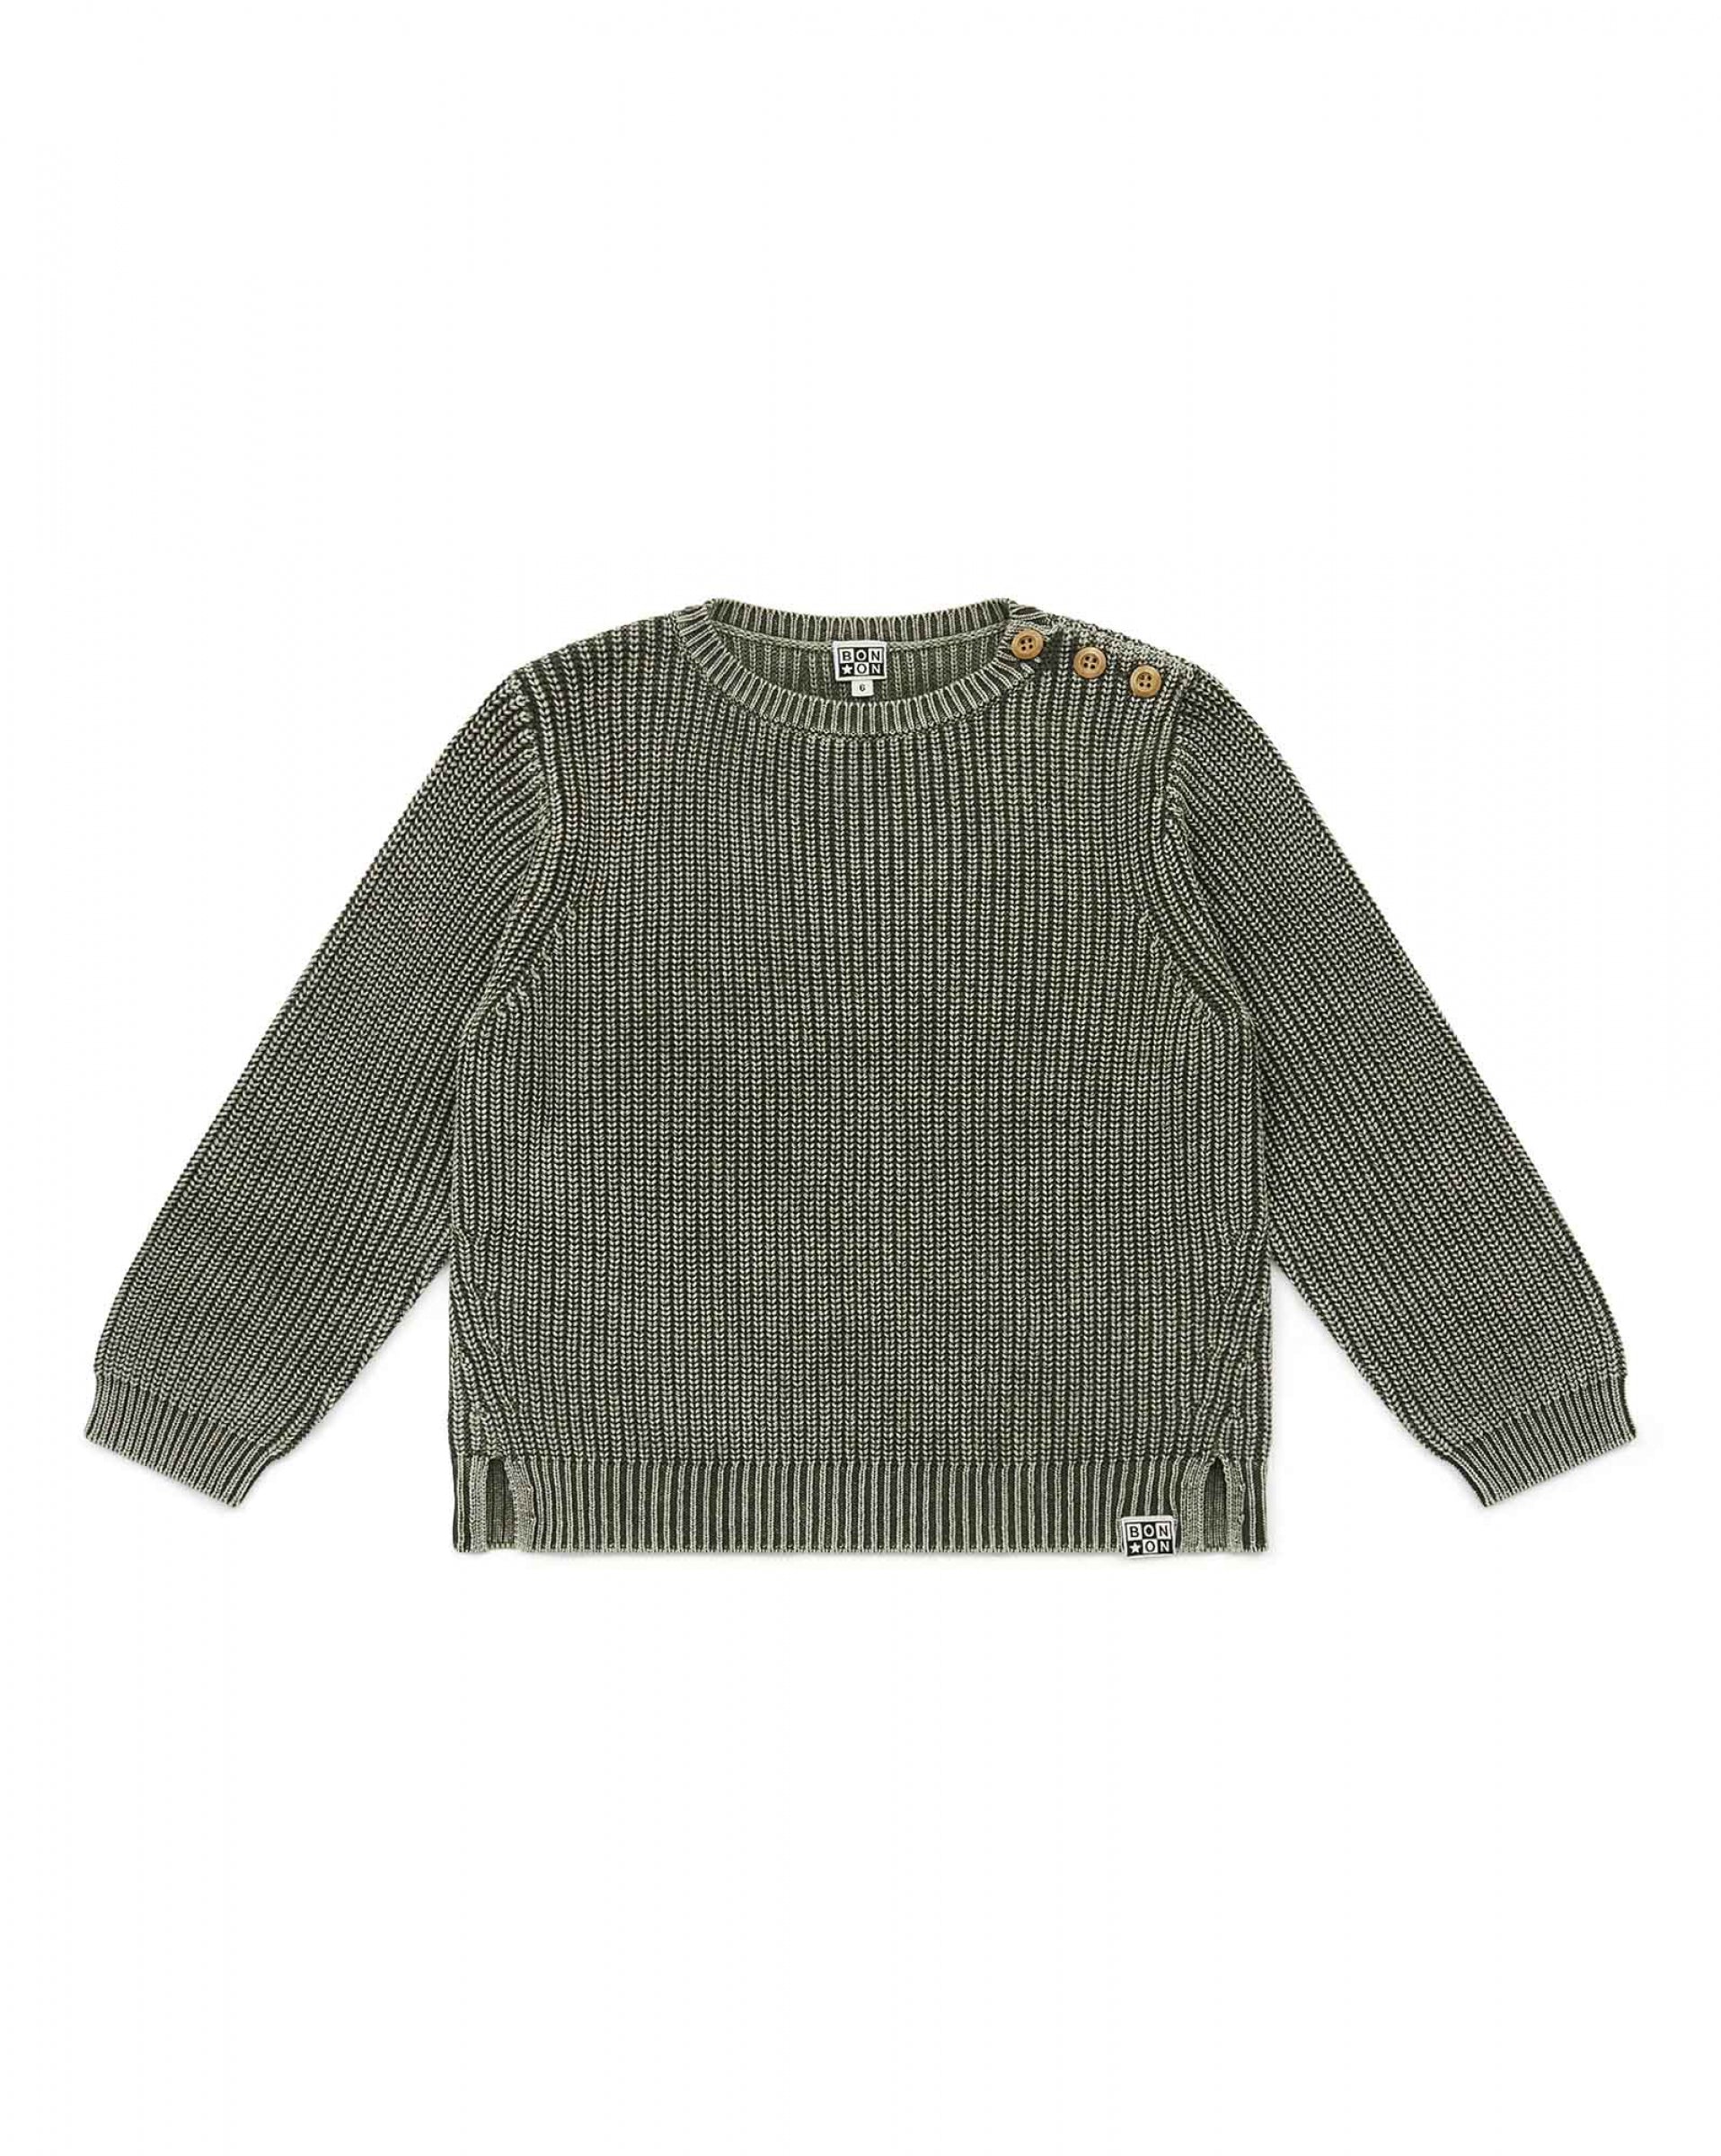 Boys Khaki Cotton Sweater